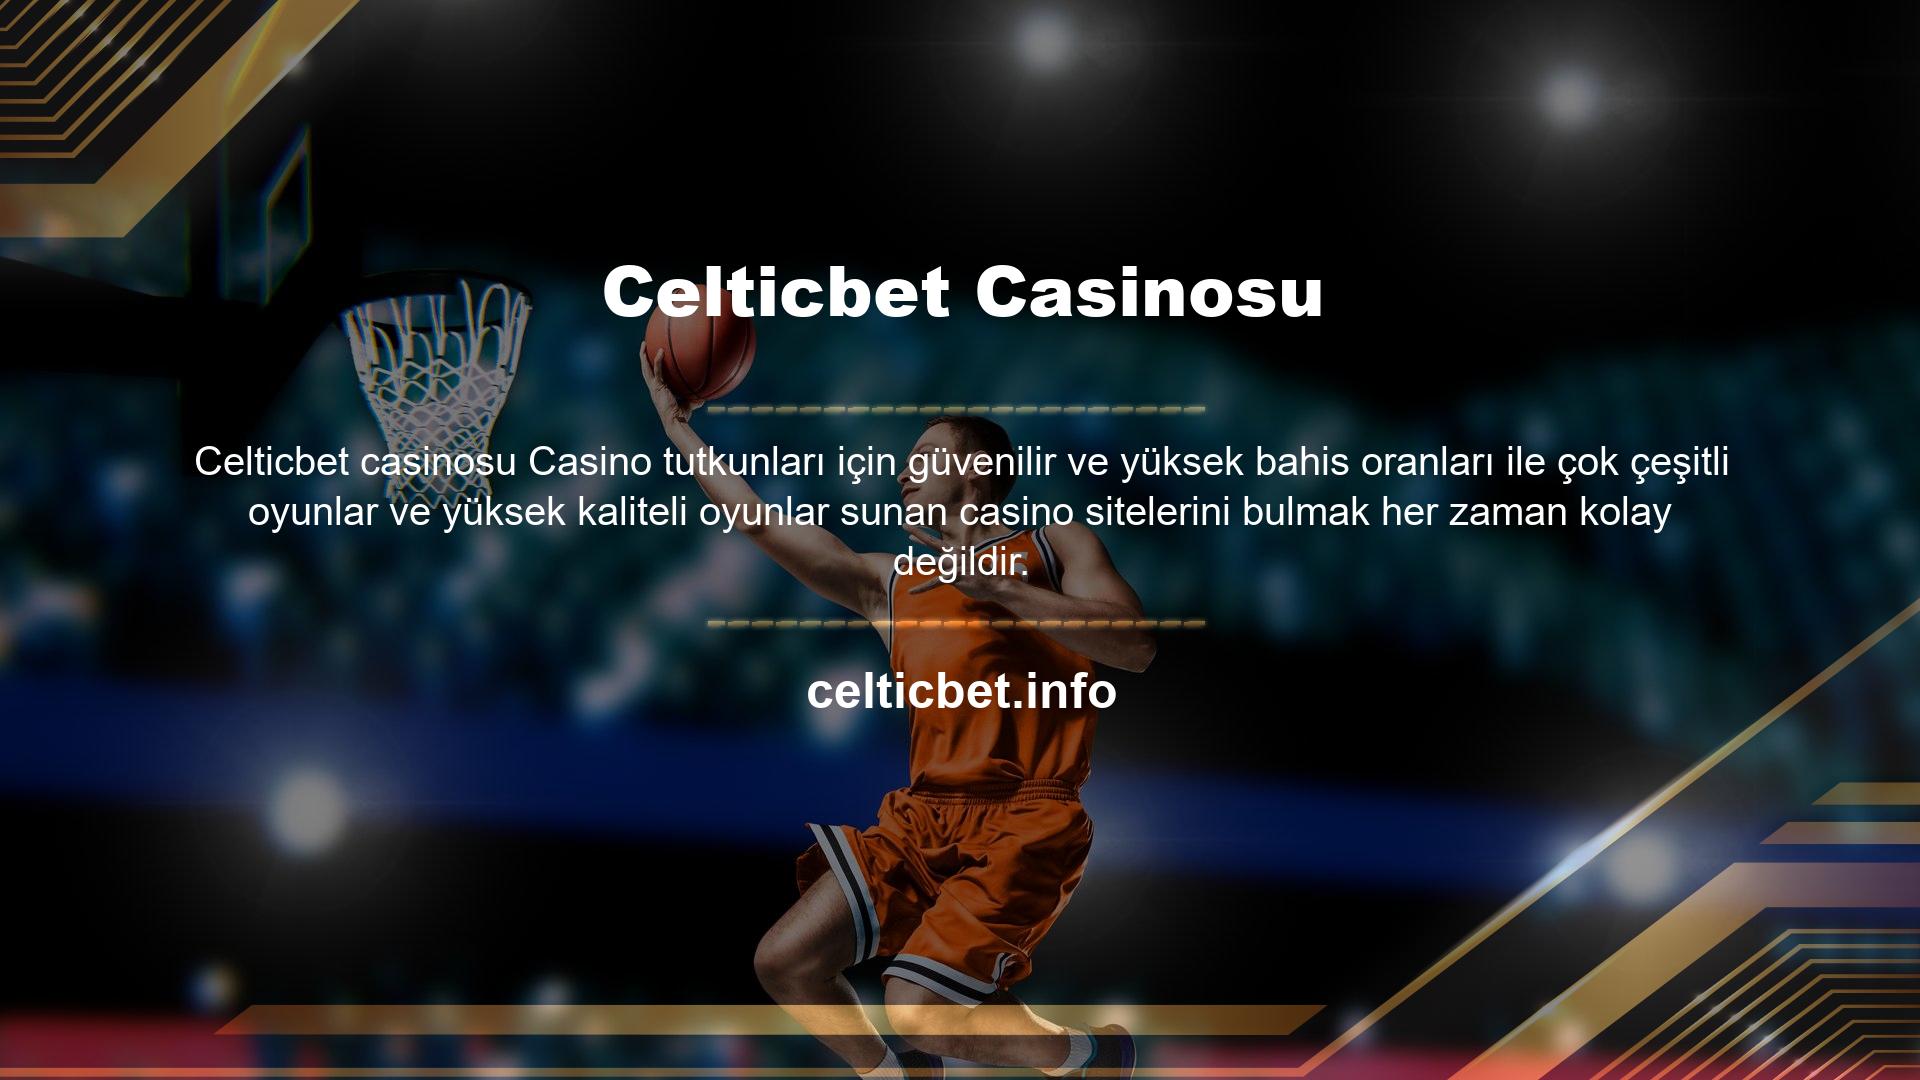 Celticbet canlı casino sitesi birçok farklı ve ilgi çekici oyun sunmaktadır